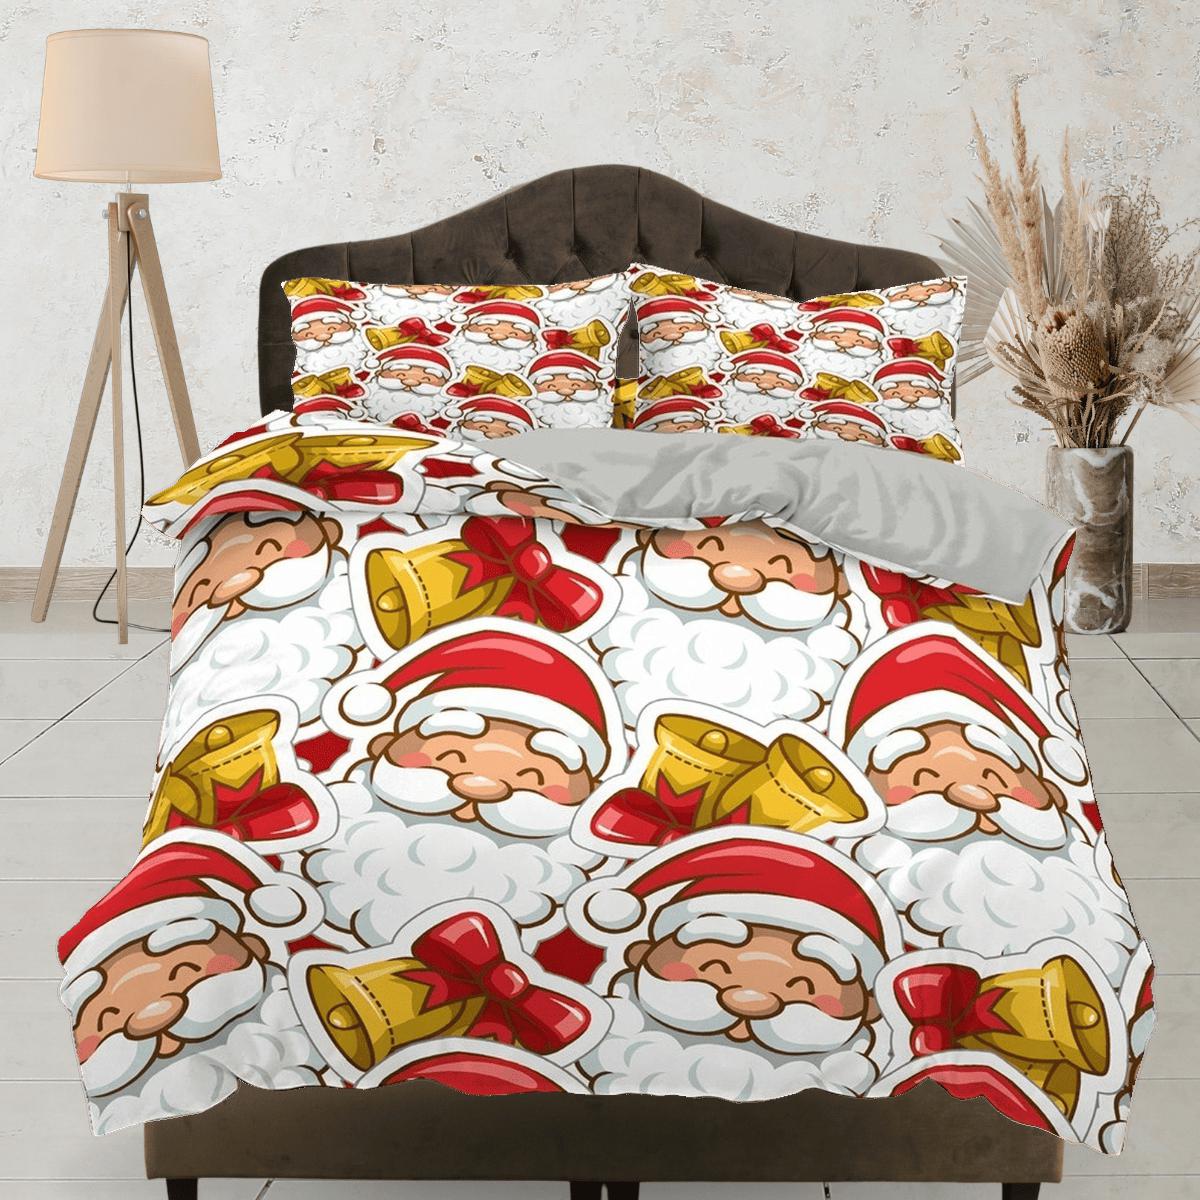 daintyduvet Smiling Santa Claus faces Christmas bedding & pillowcase holiday gift duvet cover king queen toddler bedding baby Christmas farmhouse decor